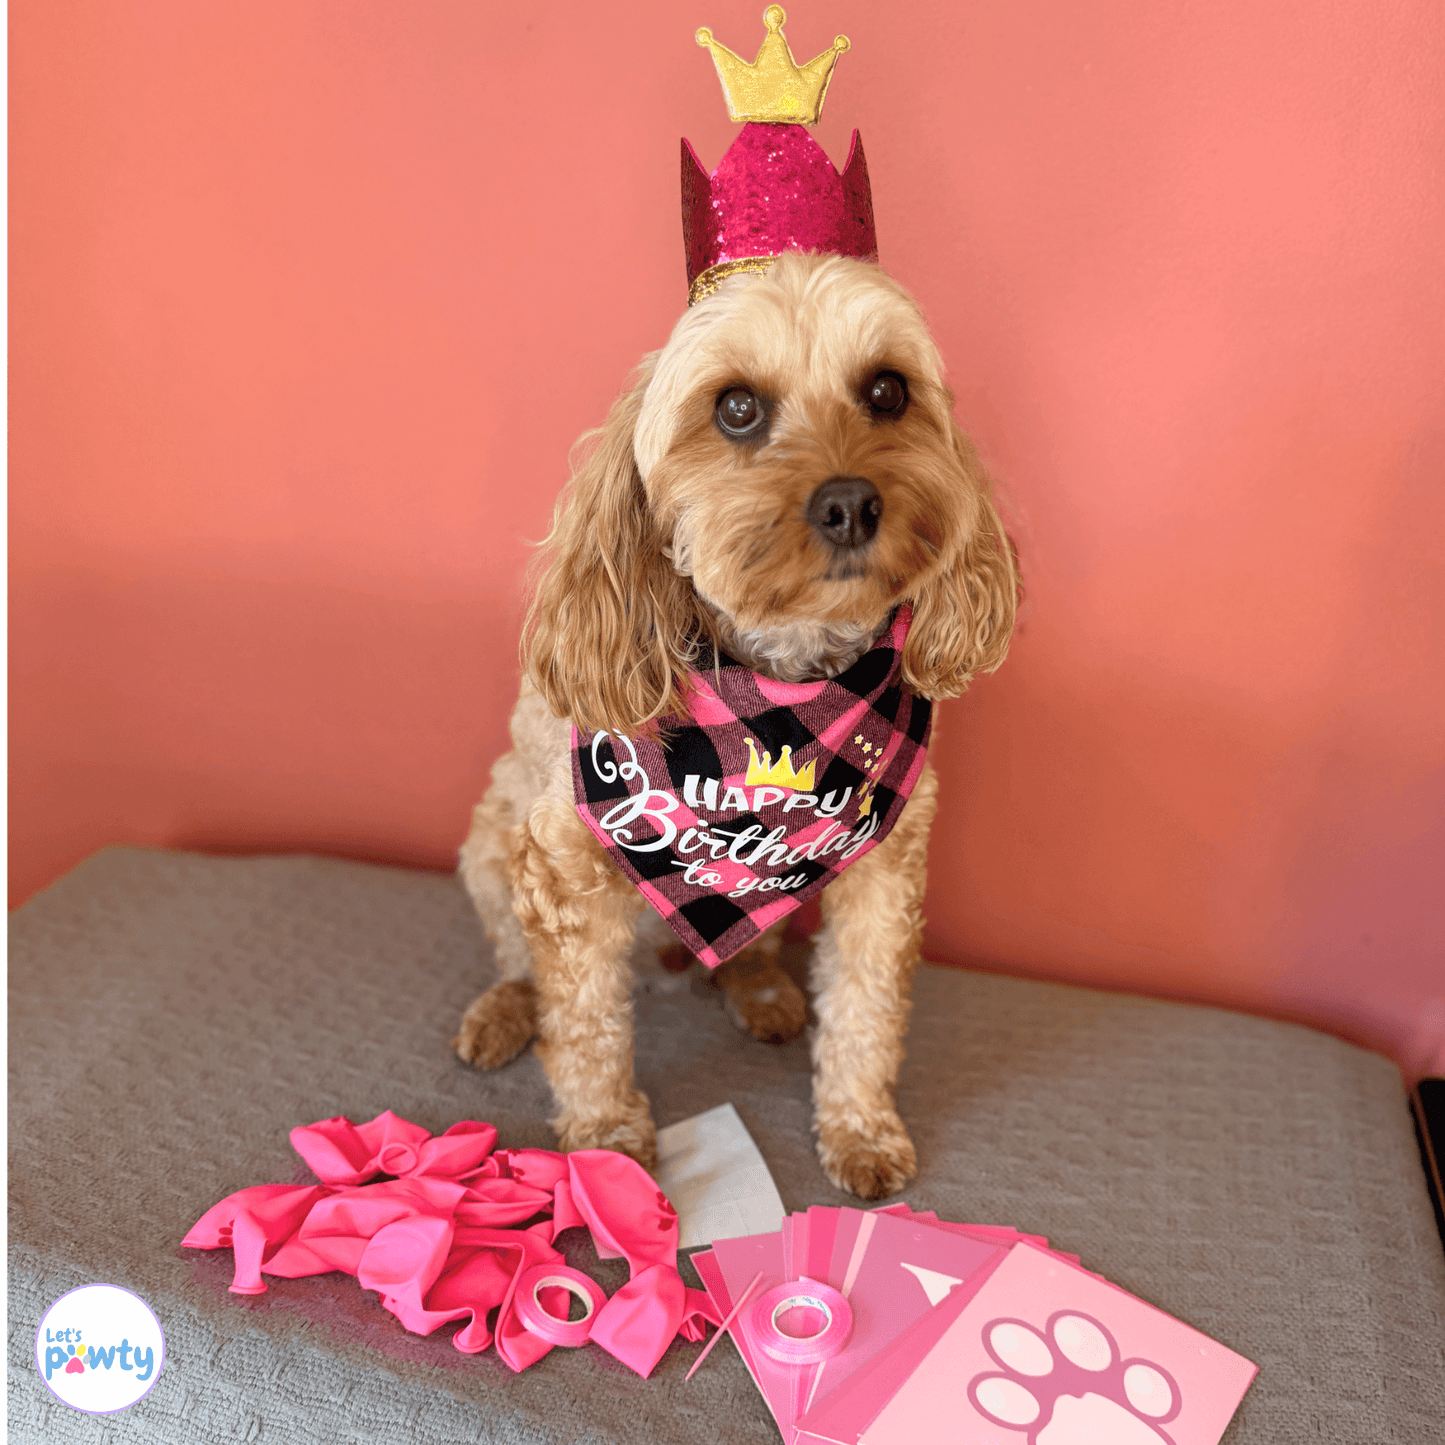 Happy birthday dog party set